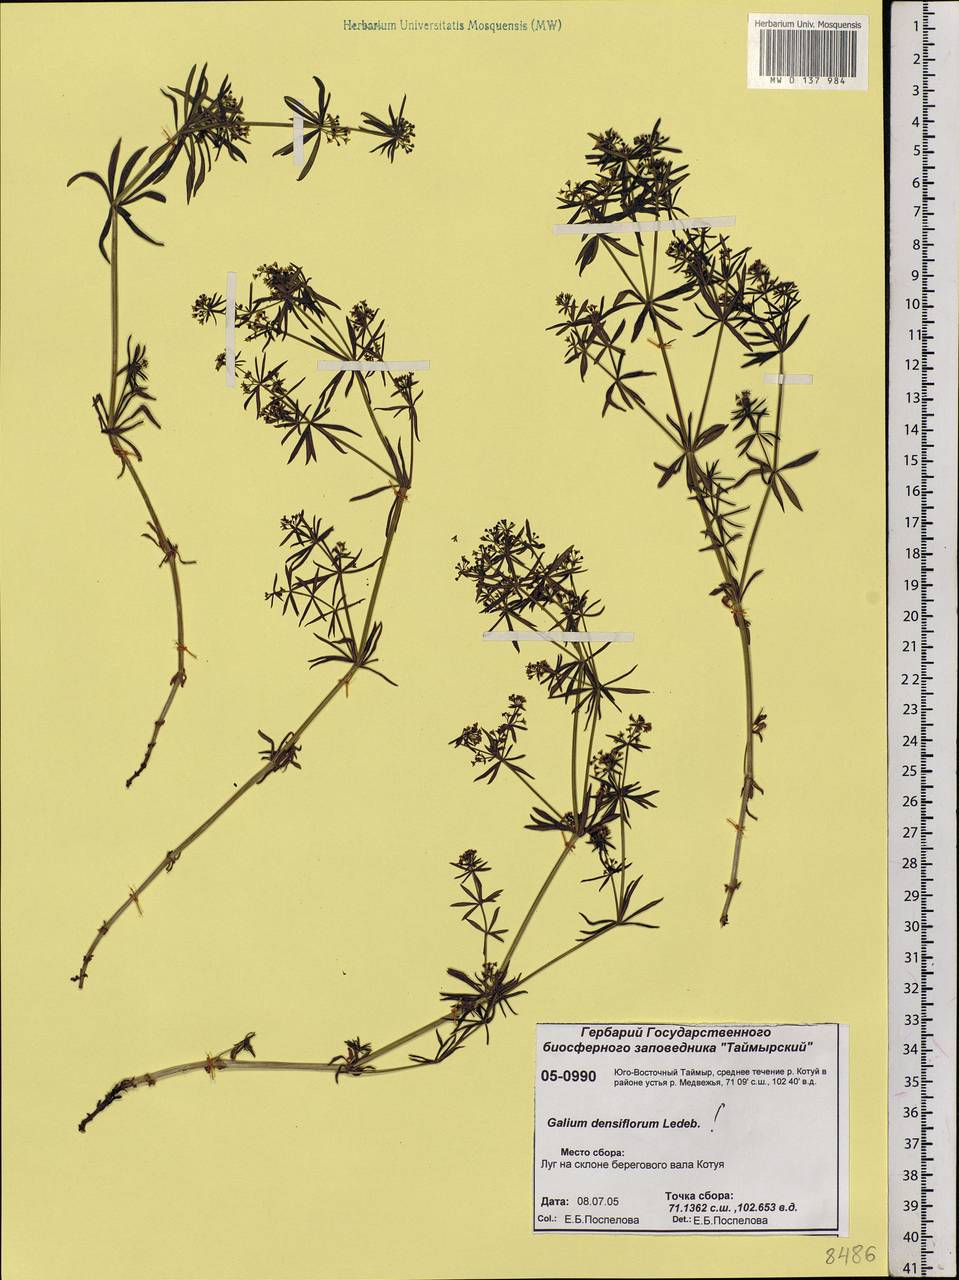 Galium verum subsp. verum, Siberia, Central Siberia (S3) (Russia)